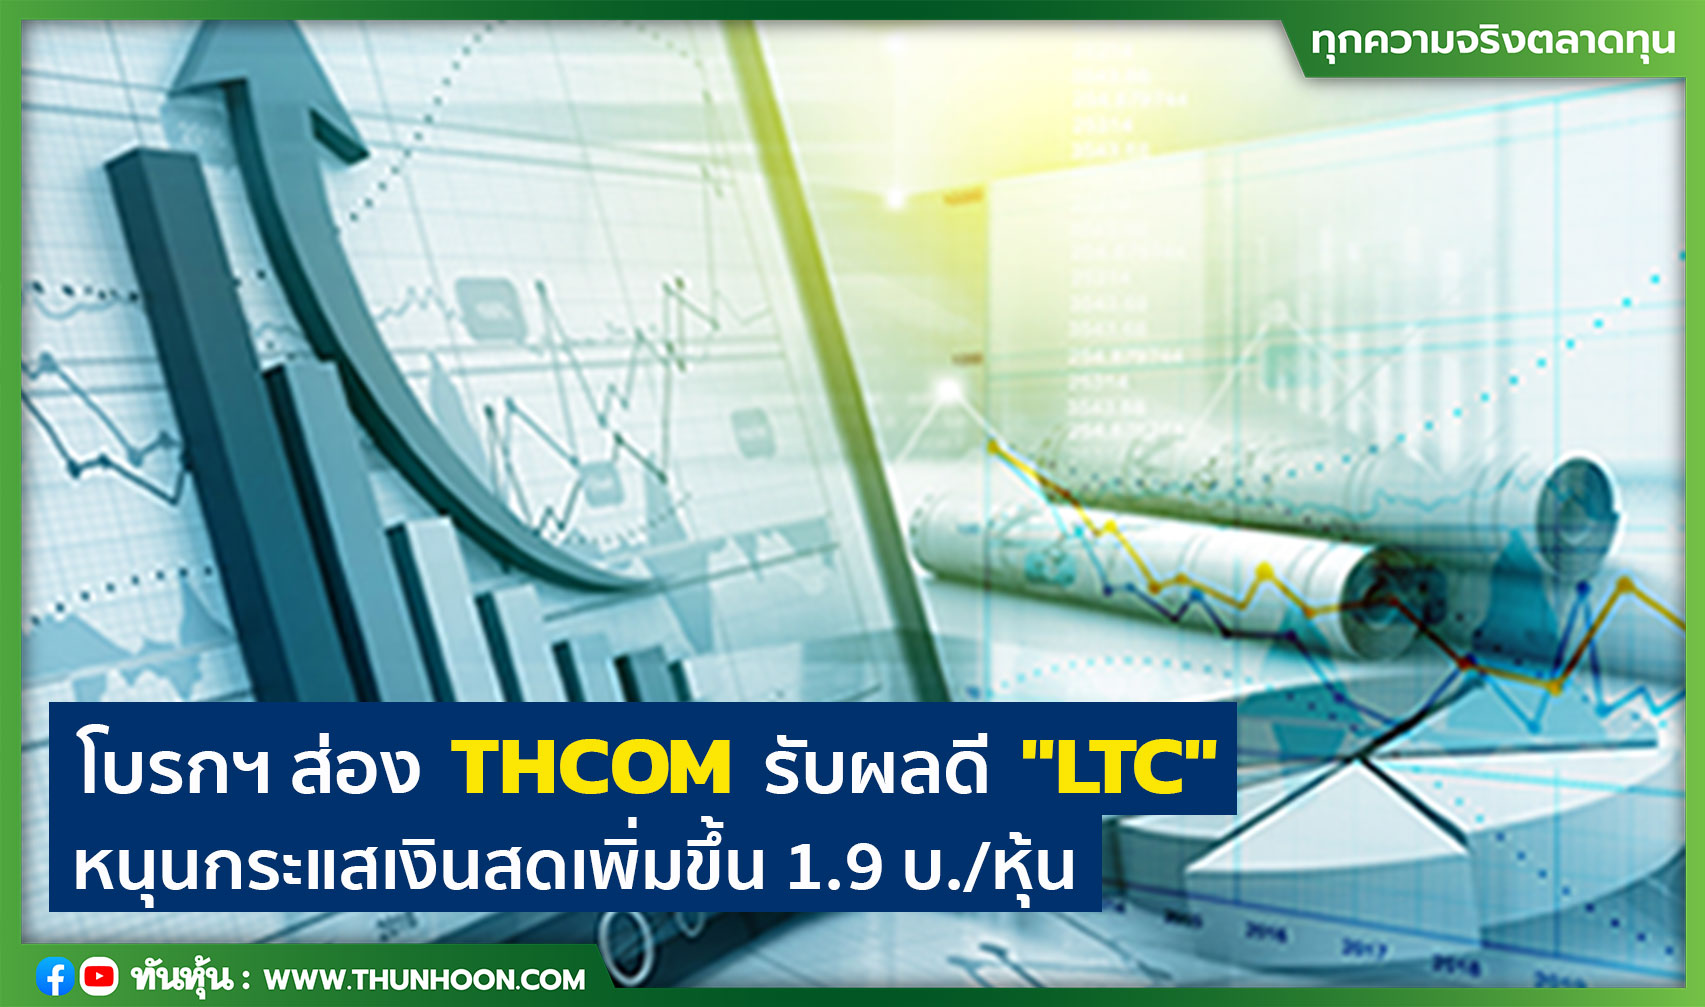 โบรกฯ ส่อง THCOM รับผลดี "LTC" หนุนกระแสเงินสดเพิ่มขึ้น 1.9 บ./หุ้น